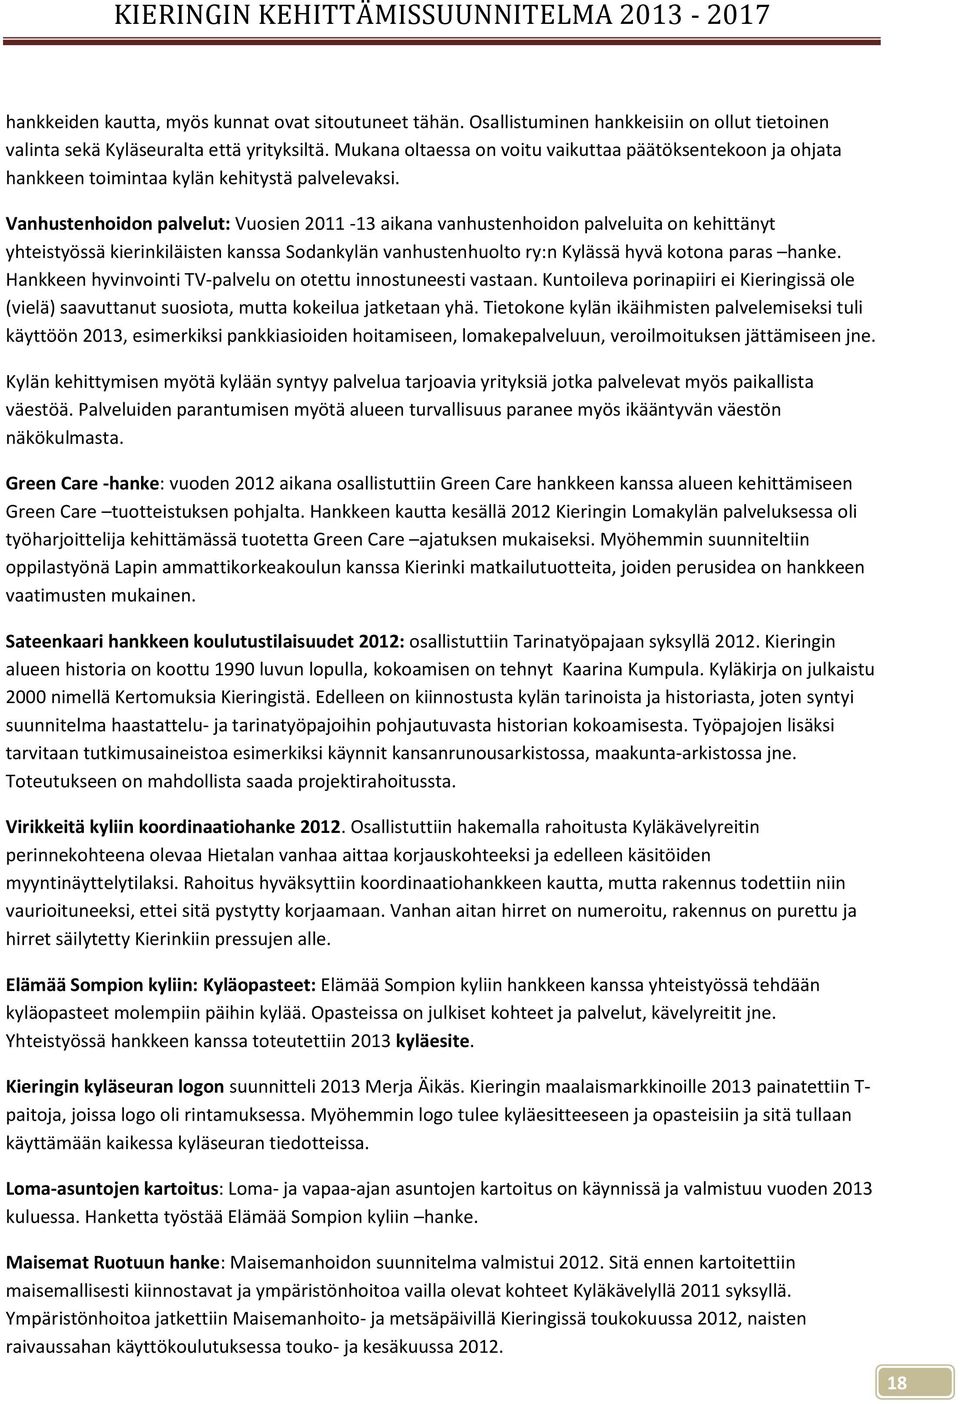 Vanhustenhoidon palvelut: Vuosien 2011-13 aikana vanhustenhoidon palveluita on kehittänyt yhteistyössä kierinkiläisten kanssa Sodankylän vanhustenhuolto ry:n Kylässä hyvä kotona paras hanke.